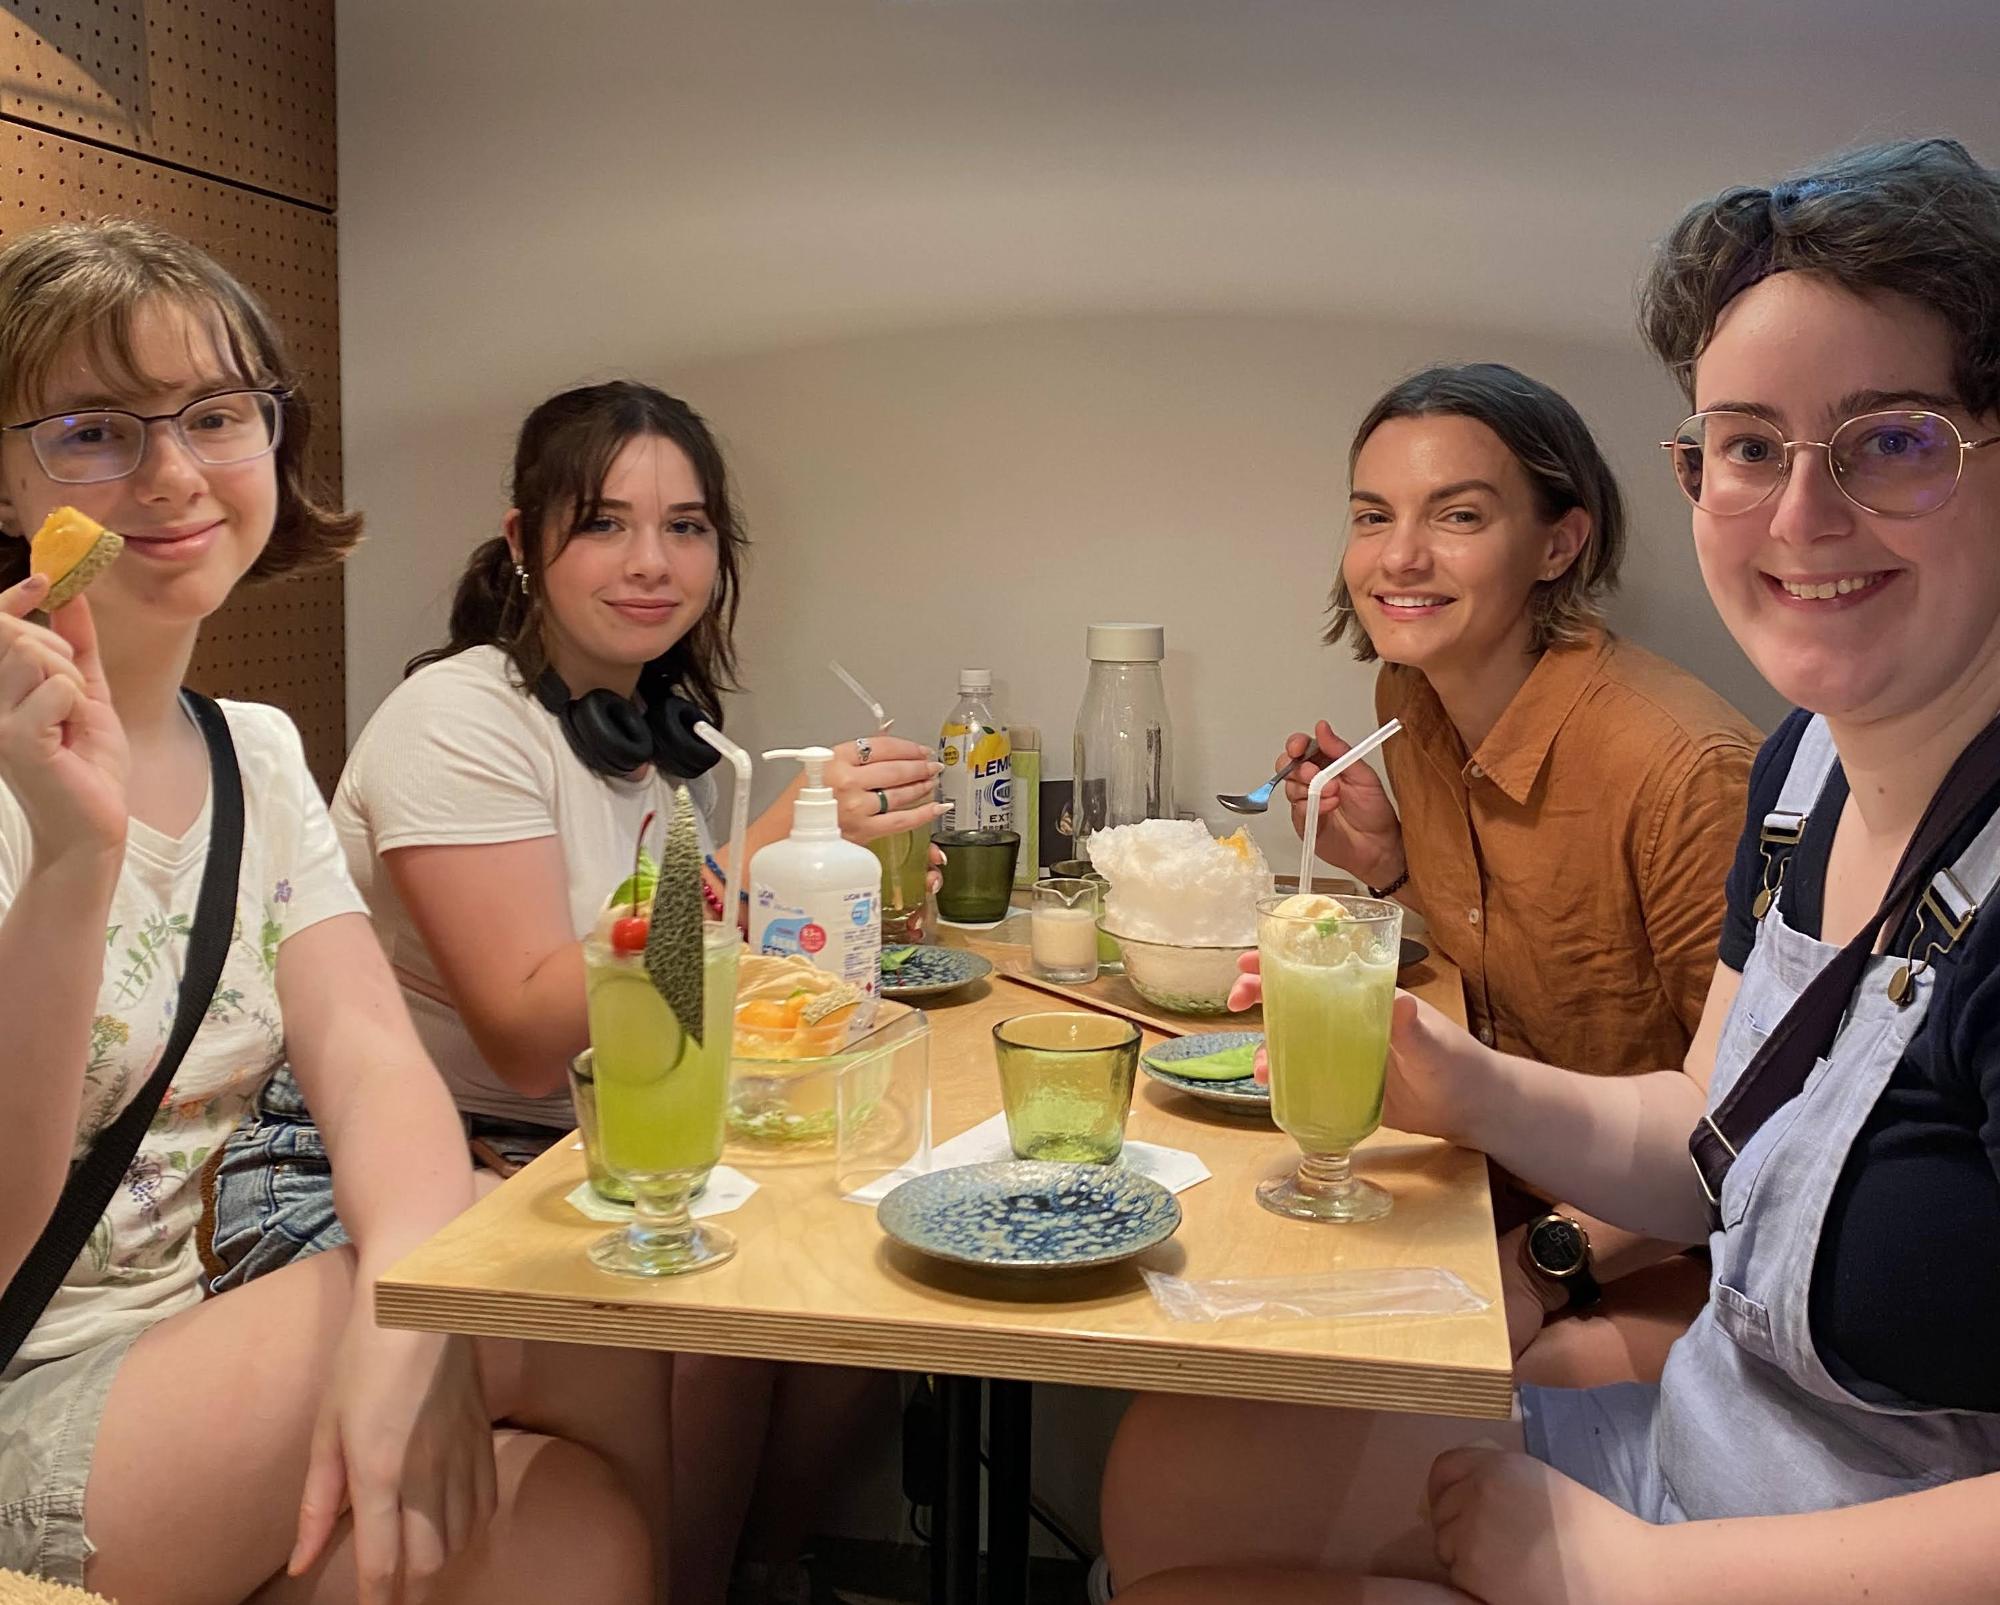 かき氷やメロンジュースなどの食べ物が乗ったテーブルの前で笑みを浮かべる訪問団4名の女性たちの写真